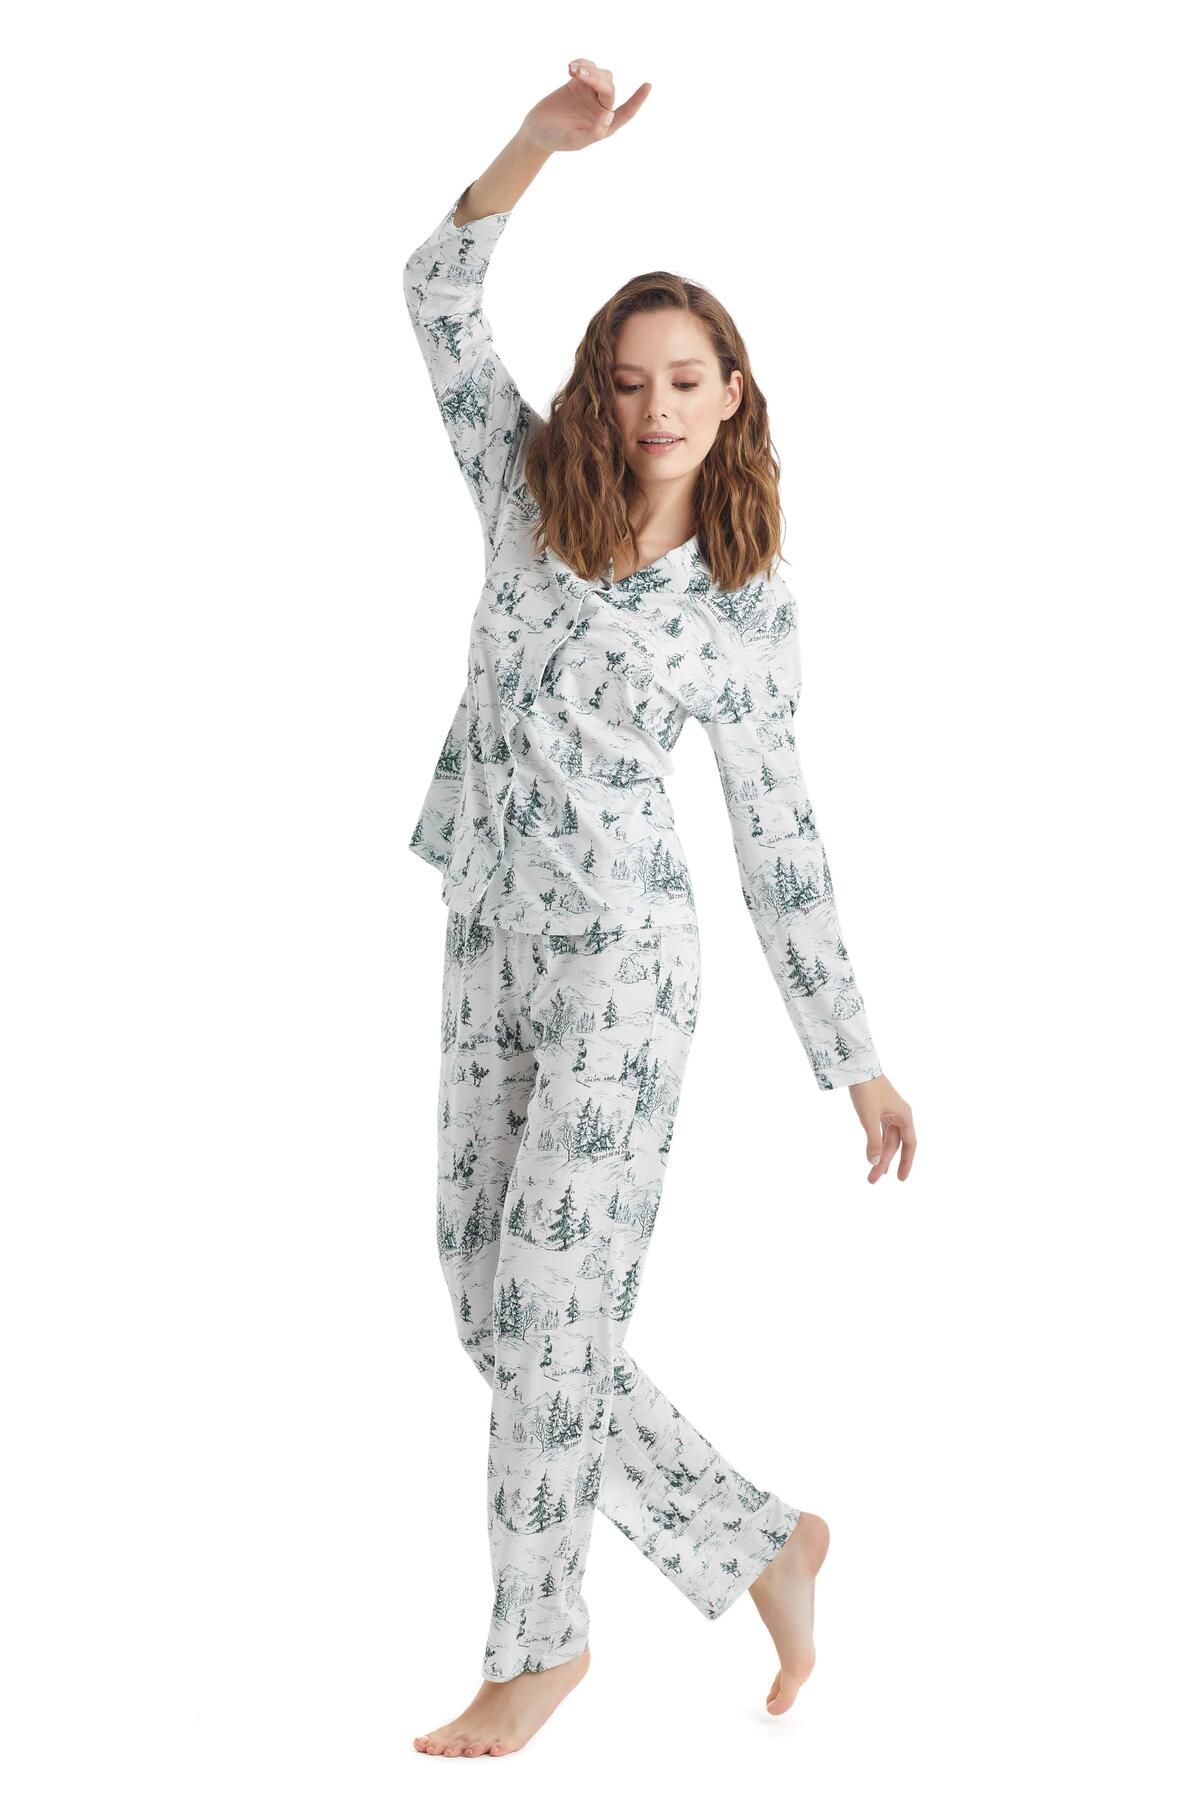 Blackspade Kadın Uzun Kol Pijama Takımı 51235